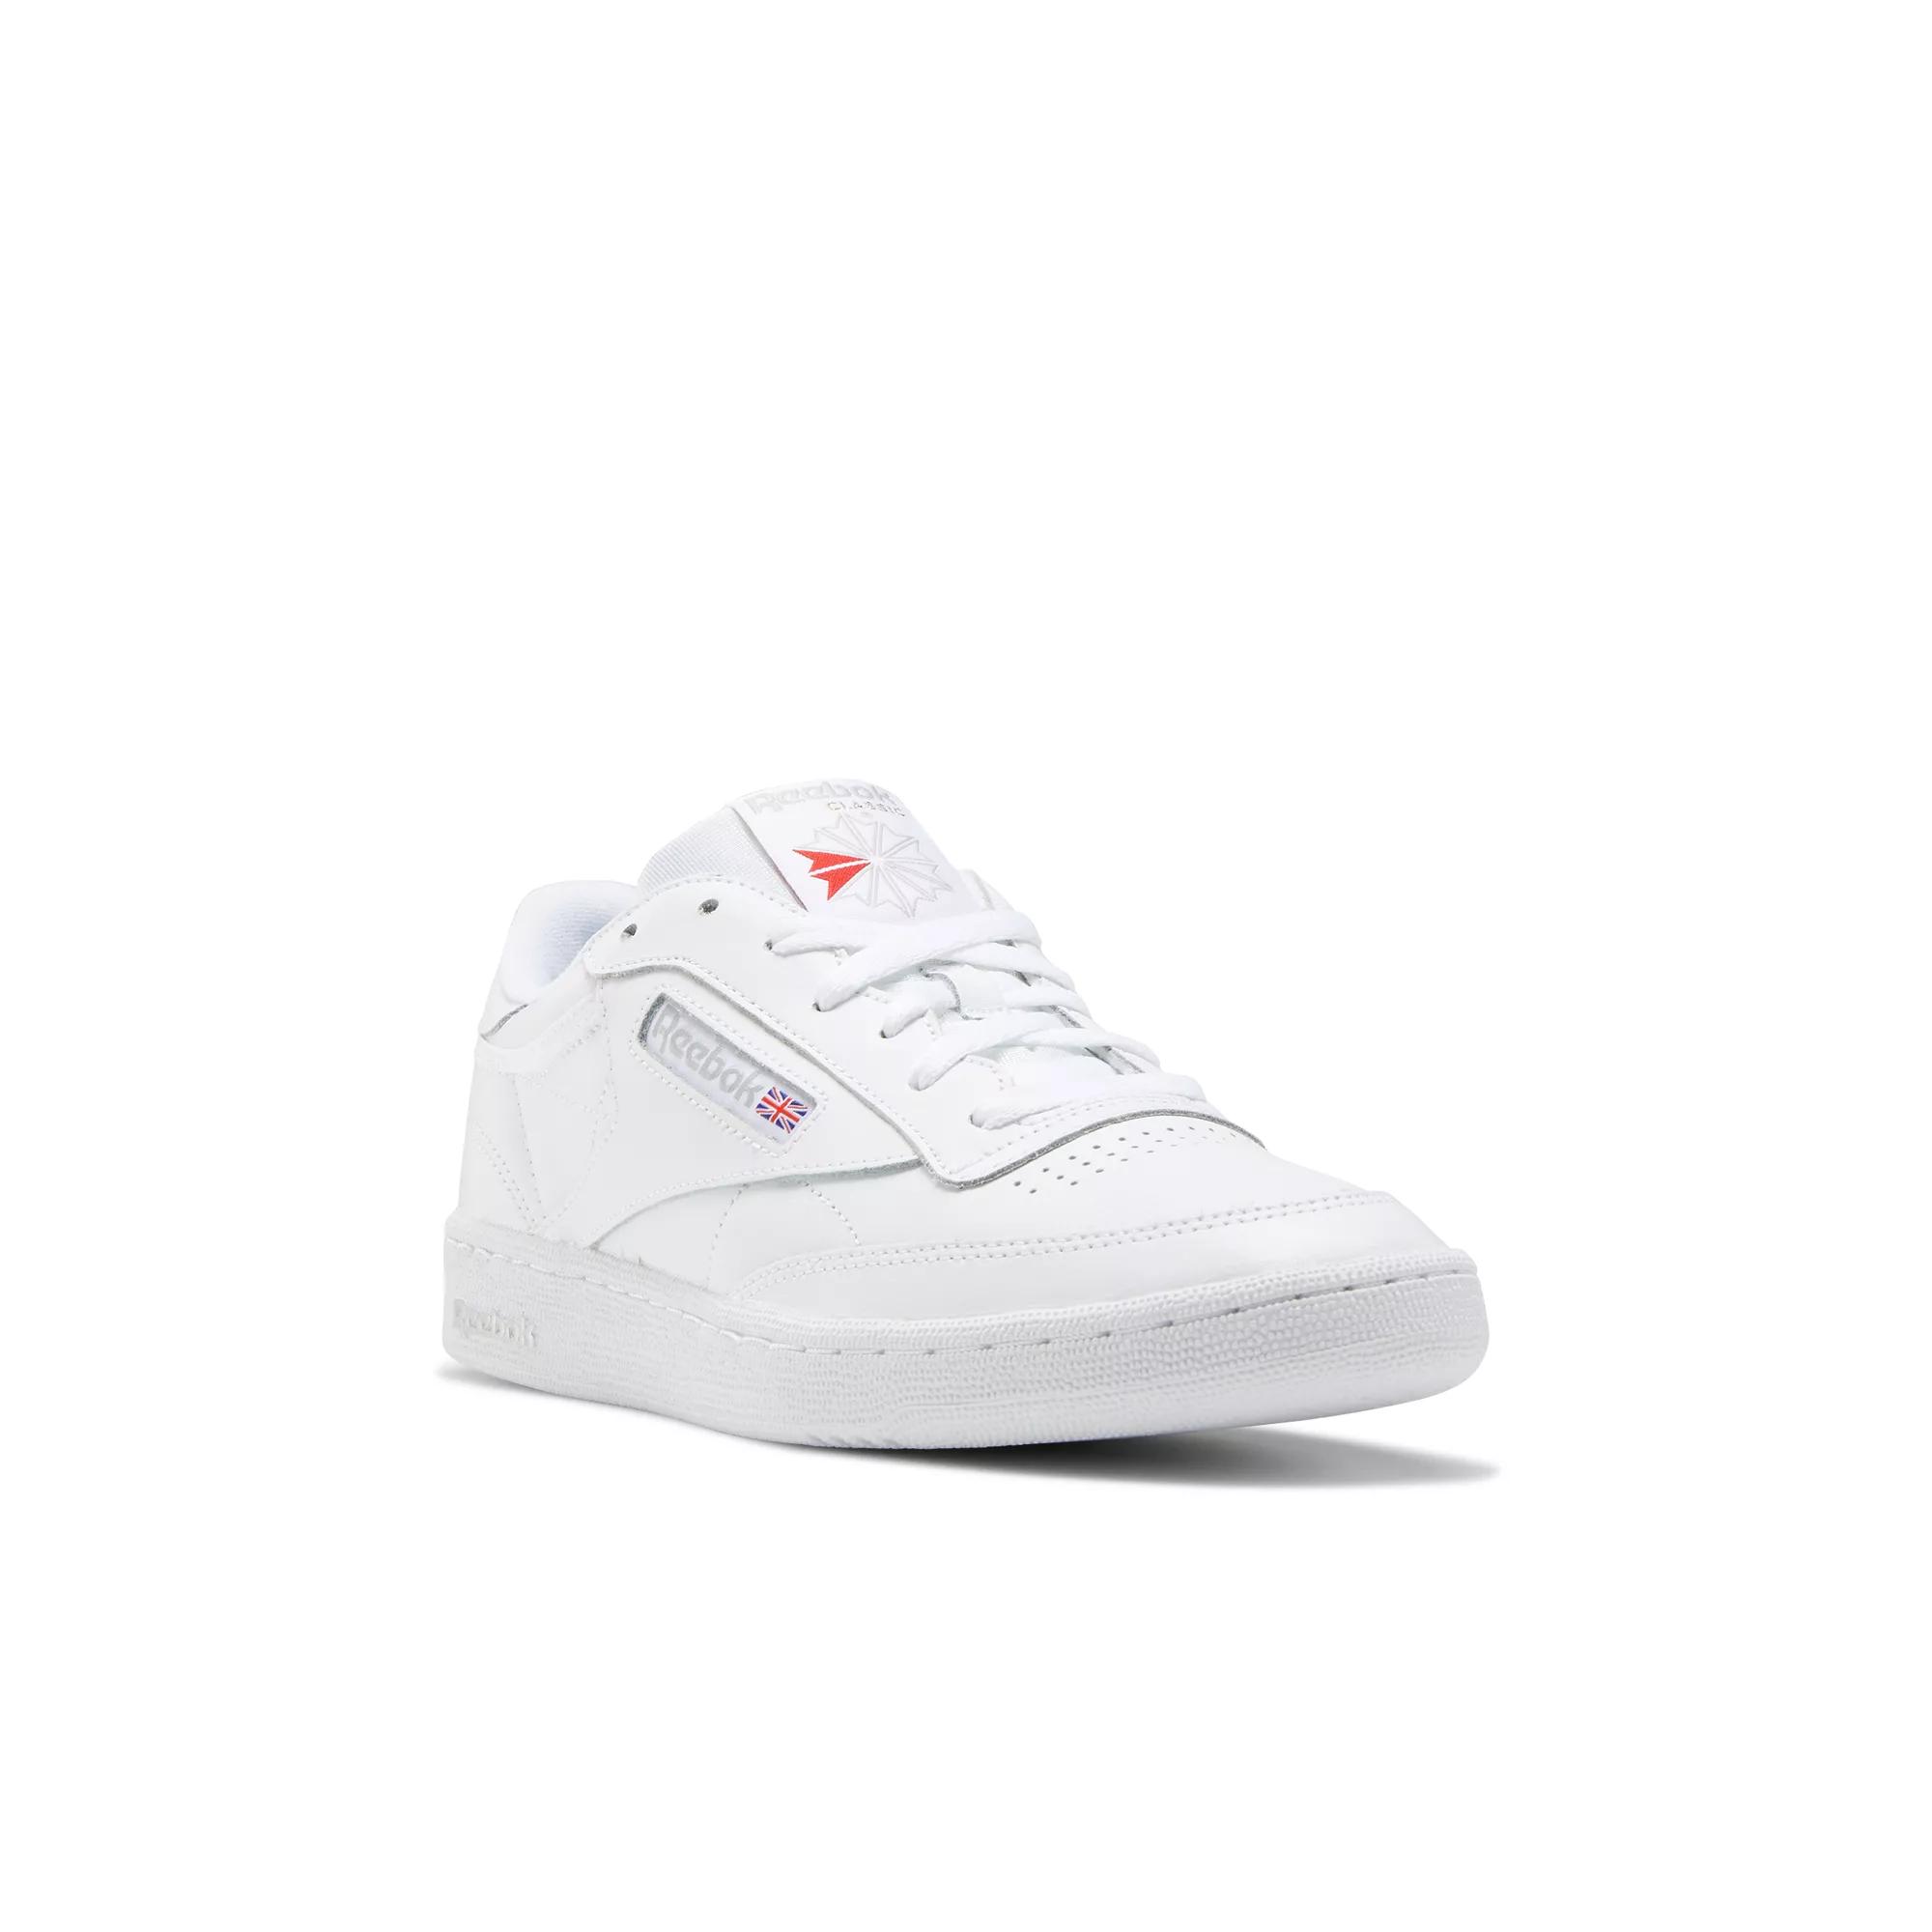 Club C 85 White - | Sheer / Grey Shoes Reebok